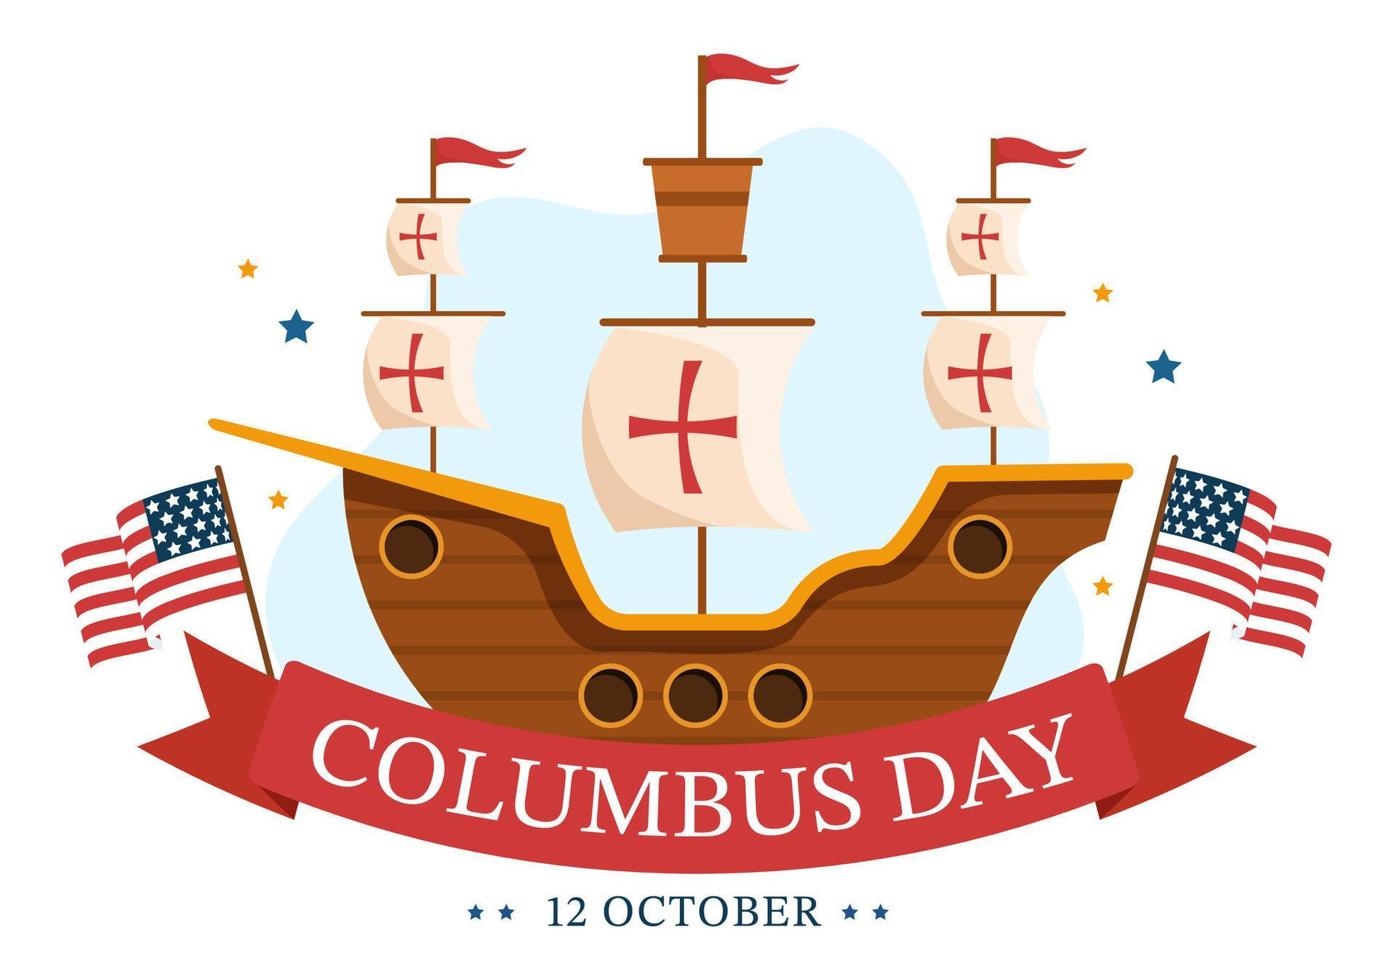 happy columbus day nationale feestdag handgetekende cartoon afbeelding met blauwe golven, kompas, schip en usa vlaggen in vlakke stijl achtergrond vector